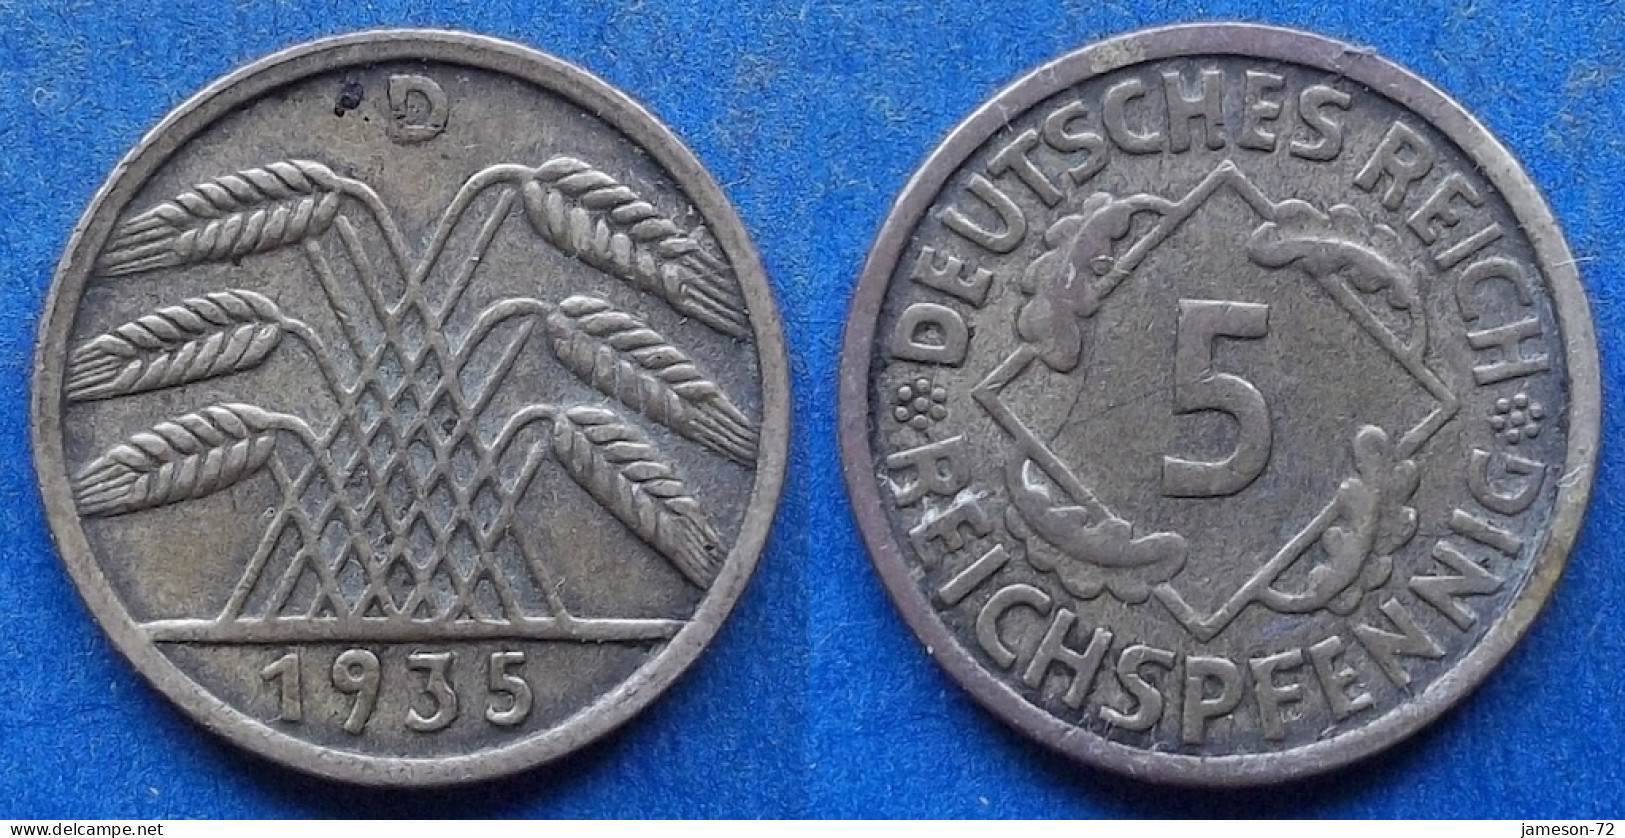 GERMANY - 5 Reichspfennig 1935 D KM# 39 Weimar Republic Reichsmark Coinage (1924-1938) - Edelweiss Coins - 5 Rentenpfennig & 5 Reichspfennig